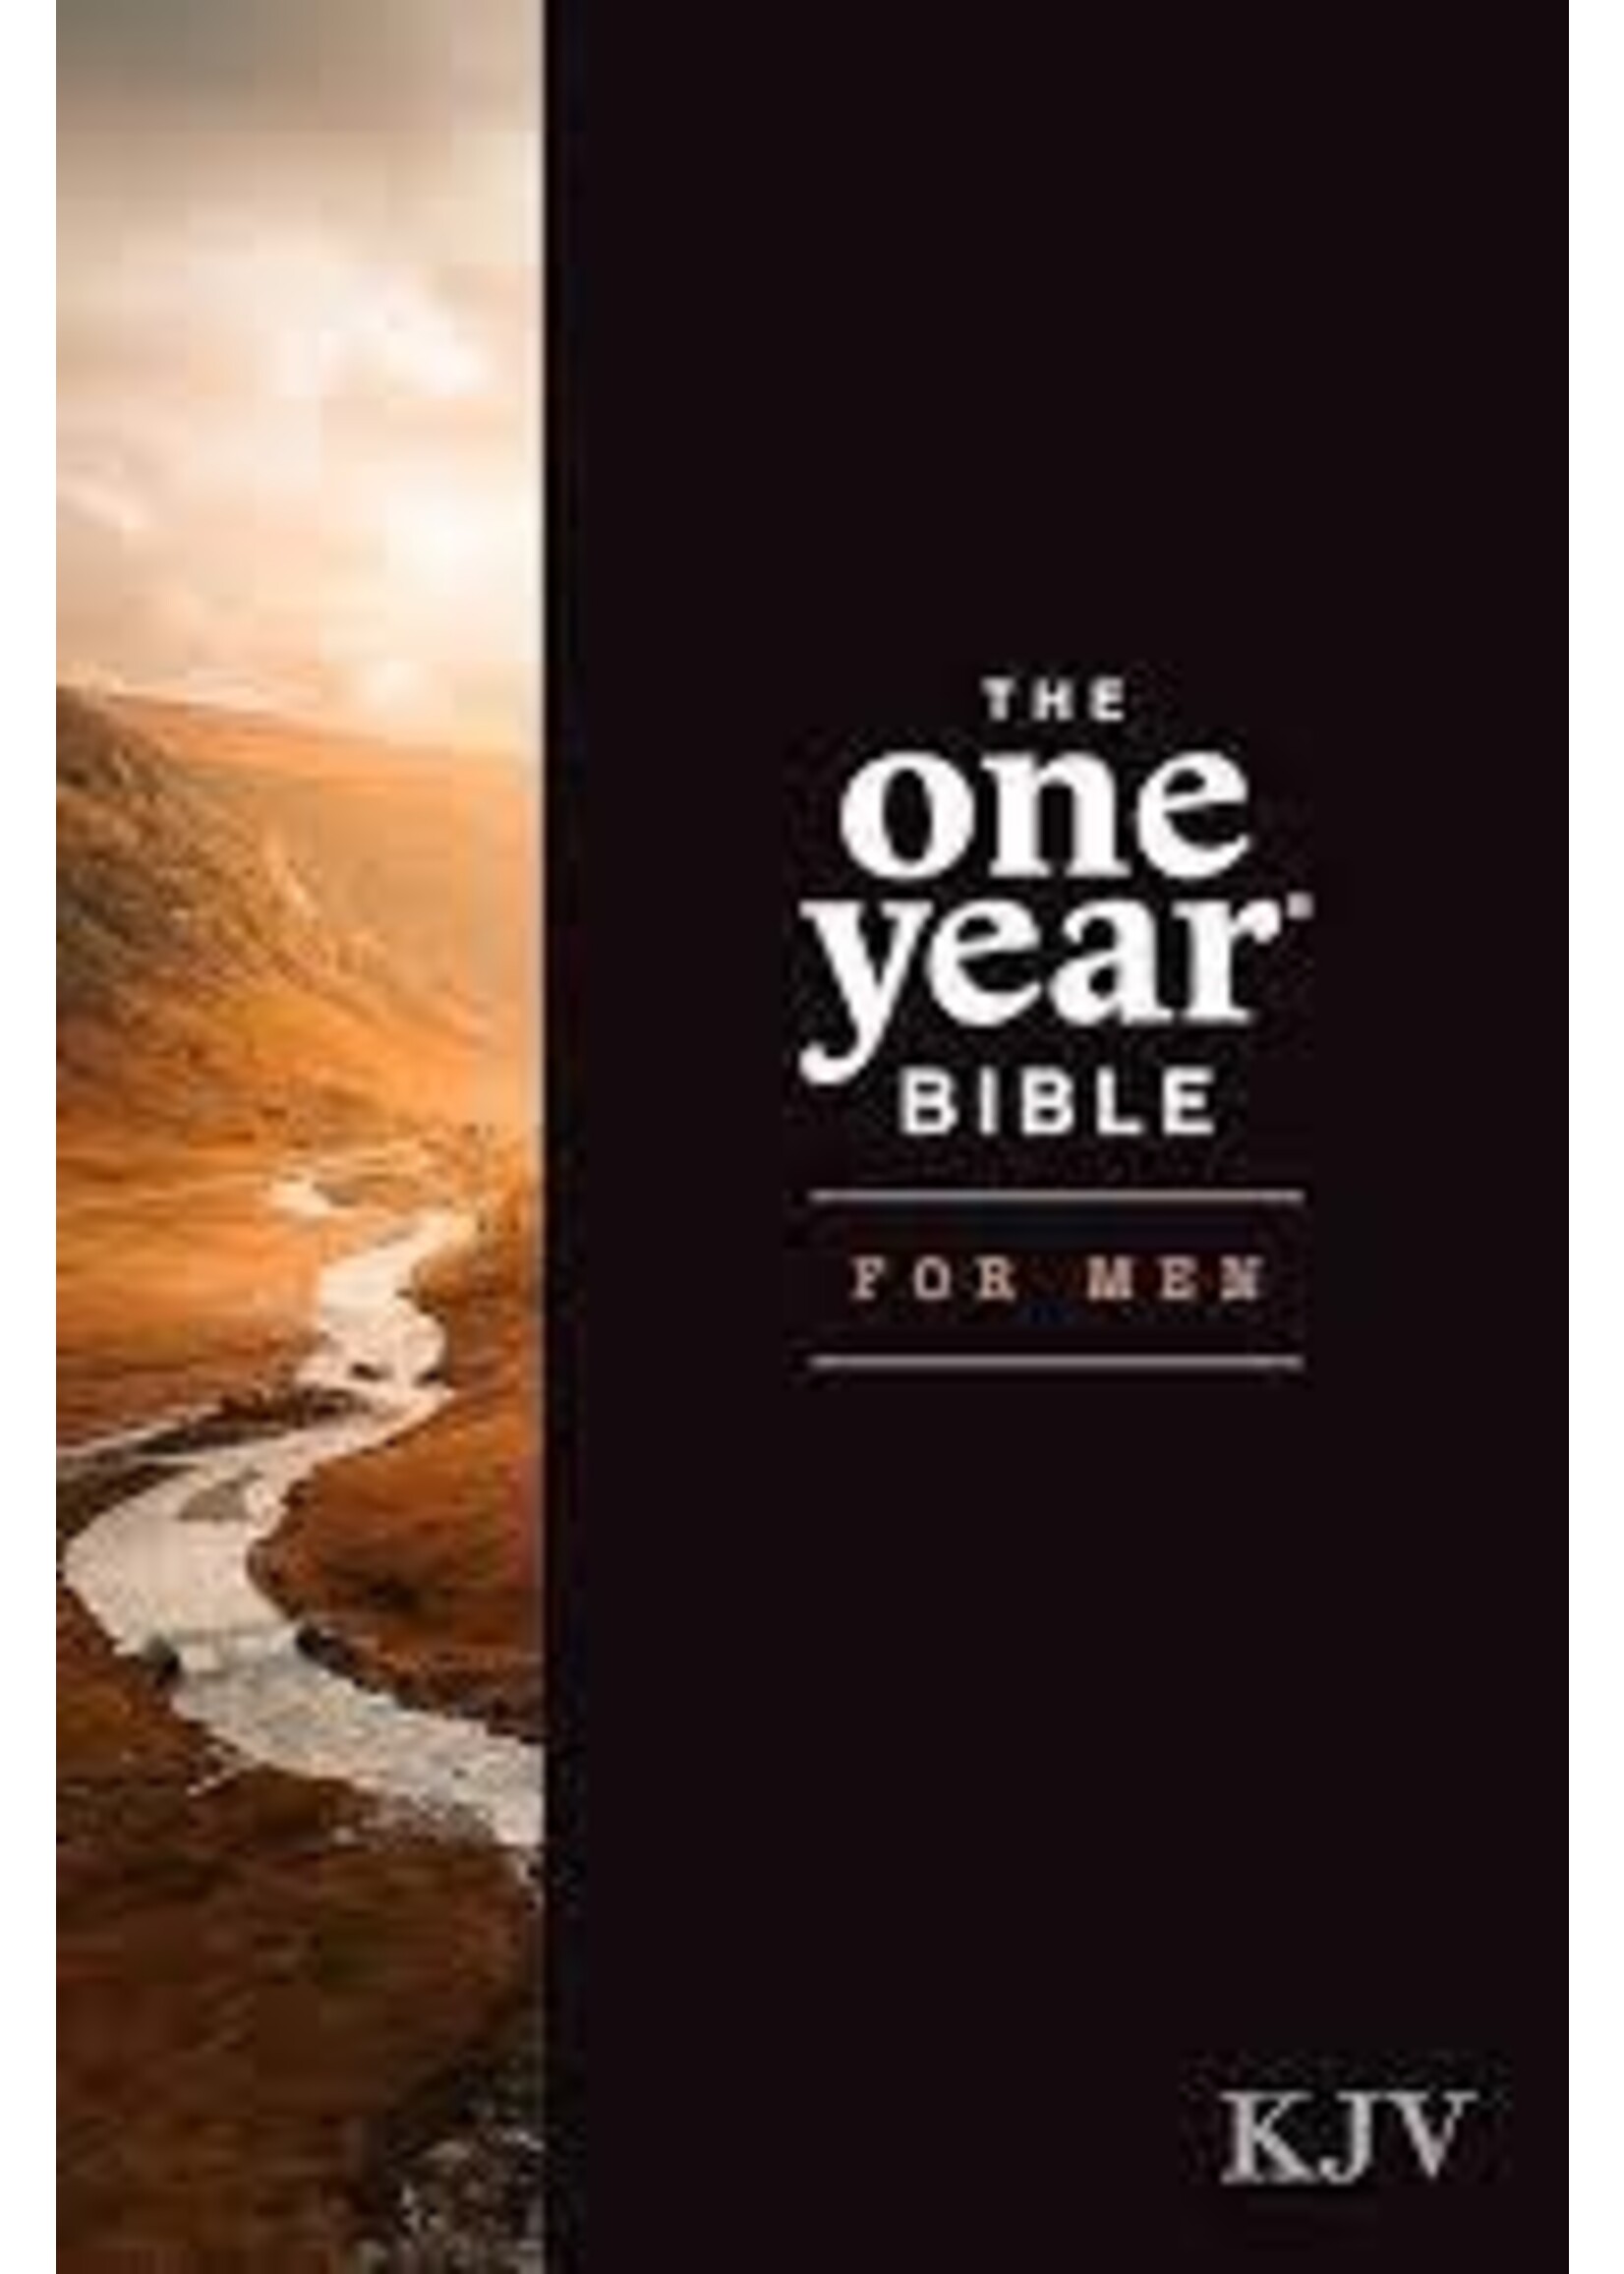 KJV The One Year Bible For Men-Hardcover